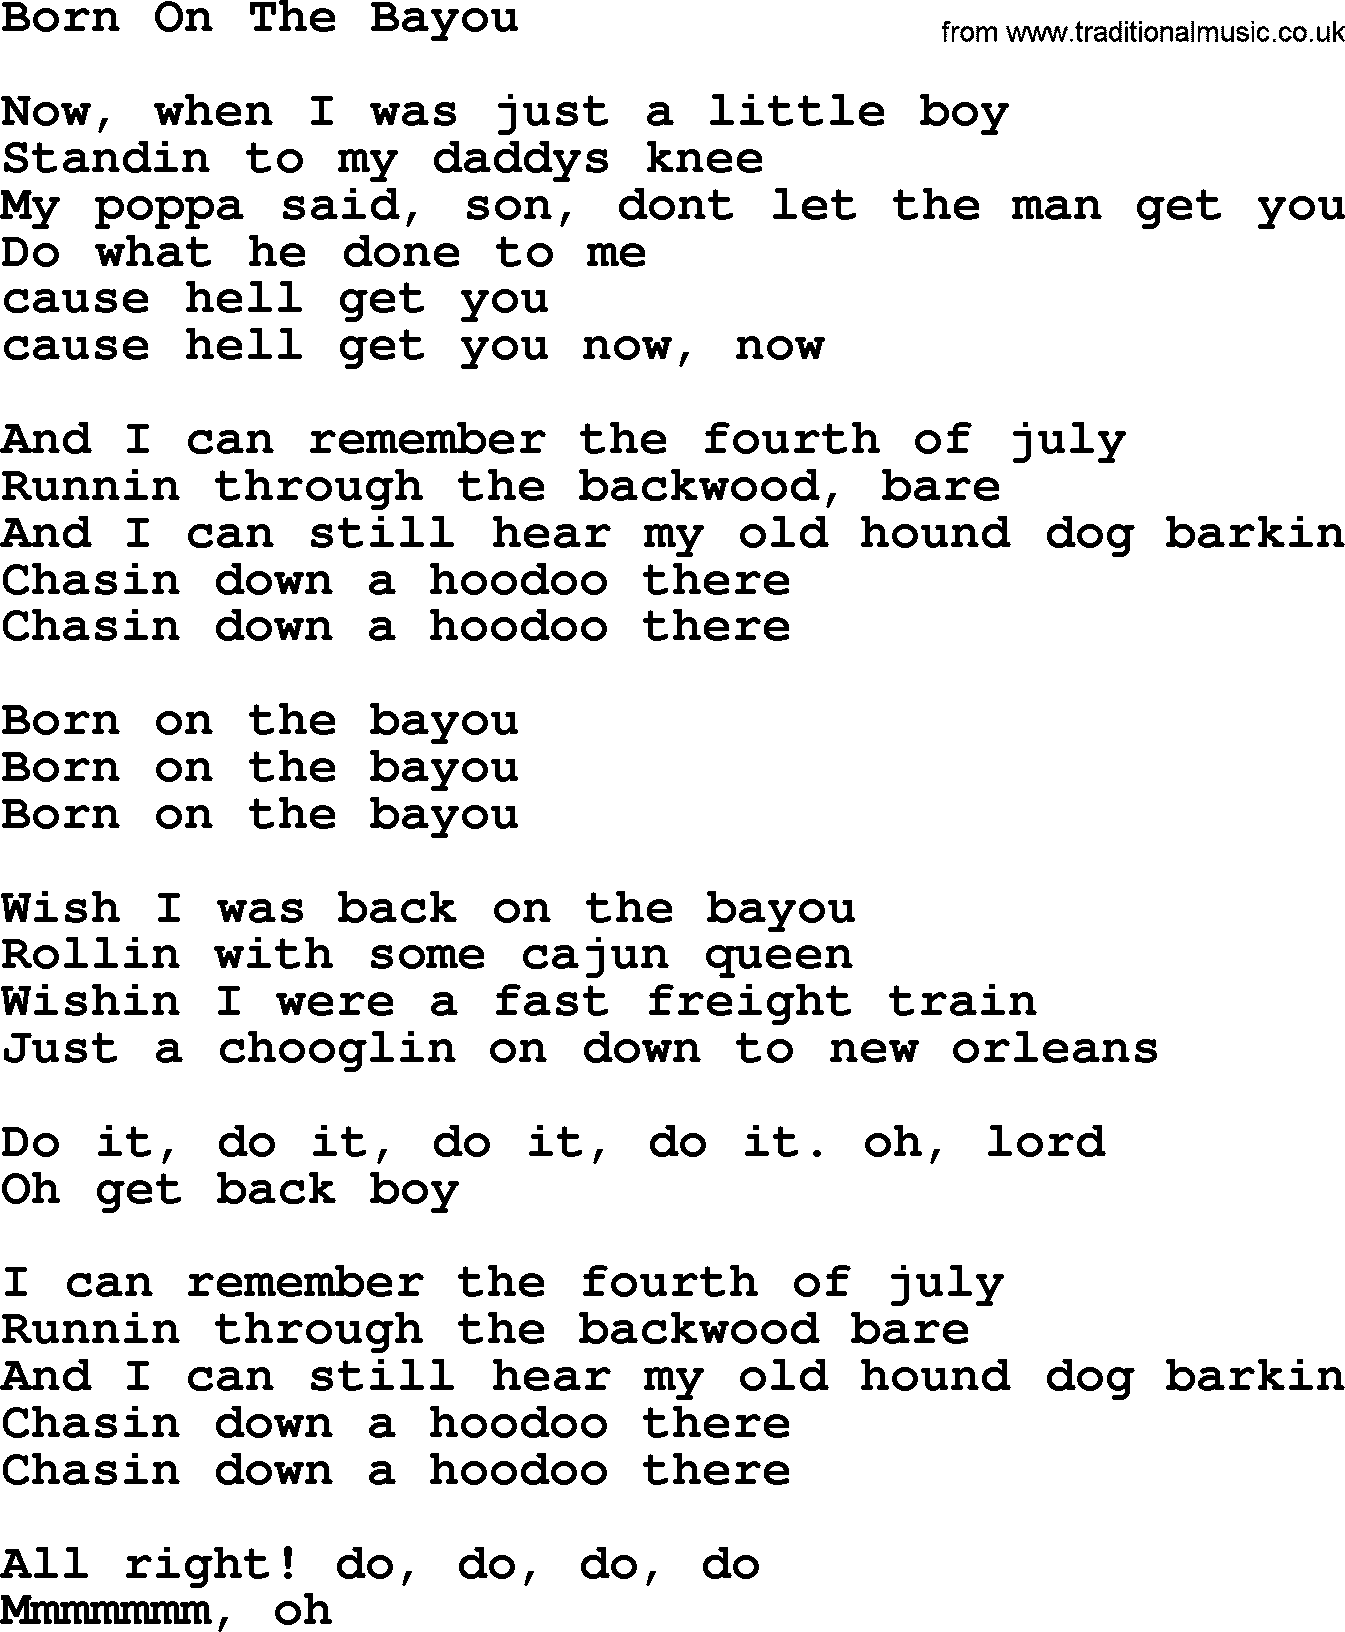 The Byrds song Born On The Bayou, lyrics